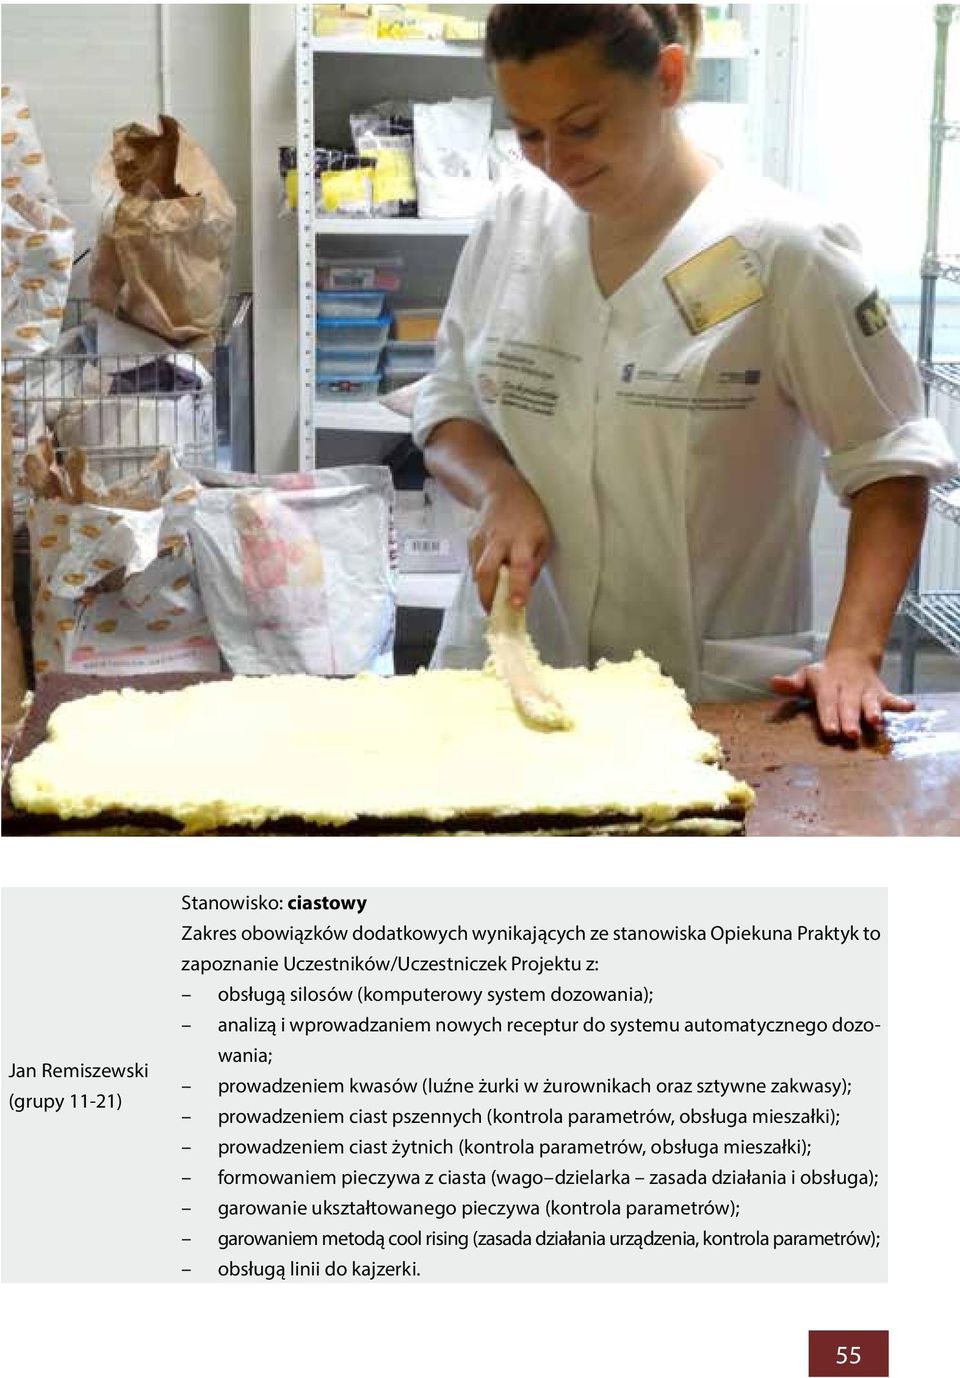 prowadzeniem ciast pszennych (kontrola parametrów, obsługa mieszałki); prowadzeniem ciast żytnich (kontrola parametrów, obsługa mieszałki); formowaniem pieczywa z ciasta (wago dzielarka